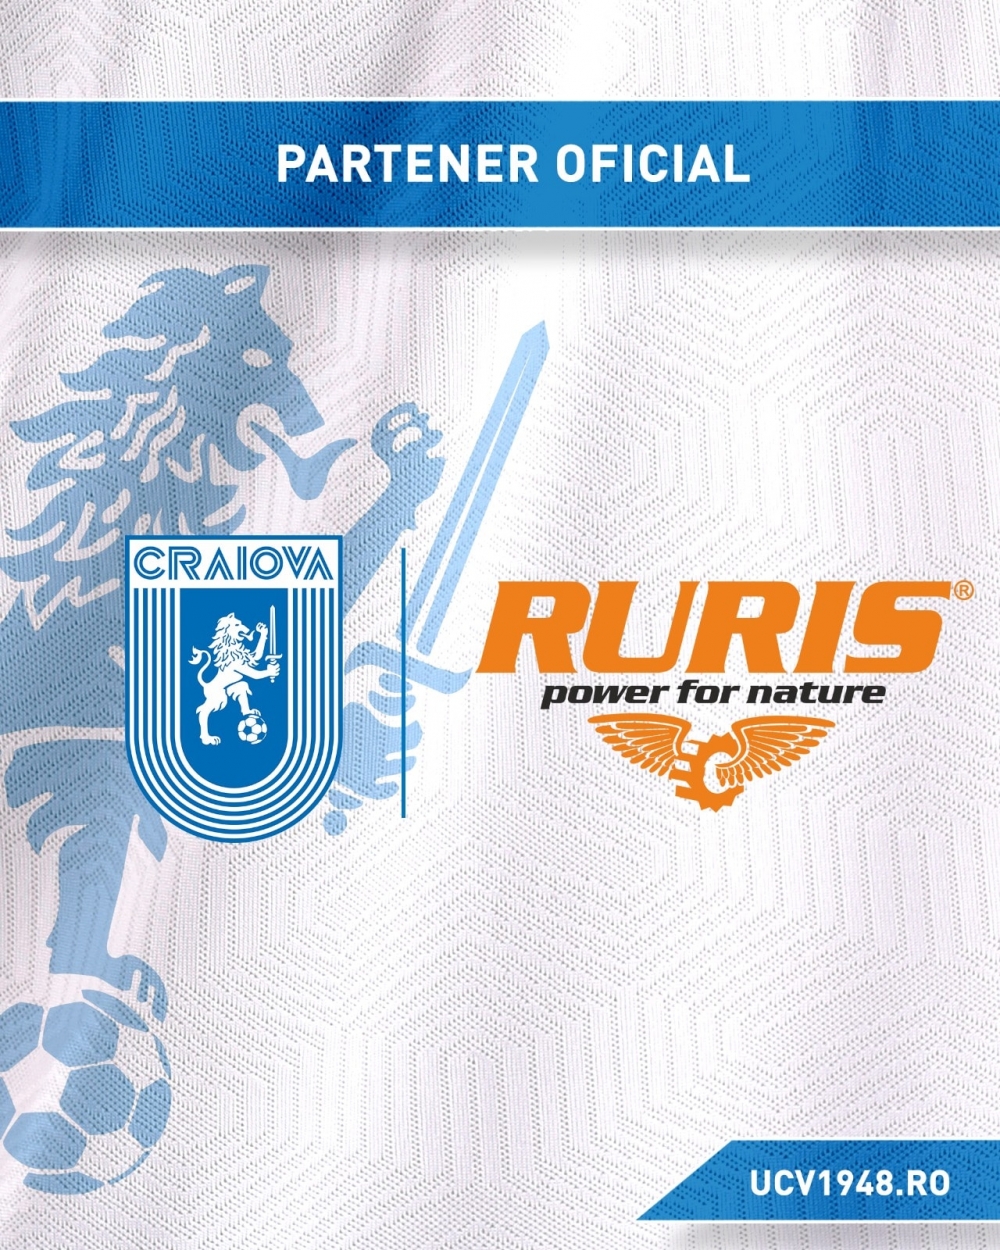 RURIS devine partener oficial